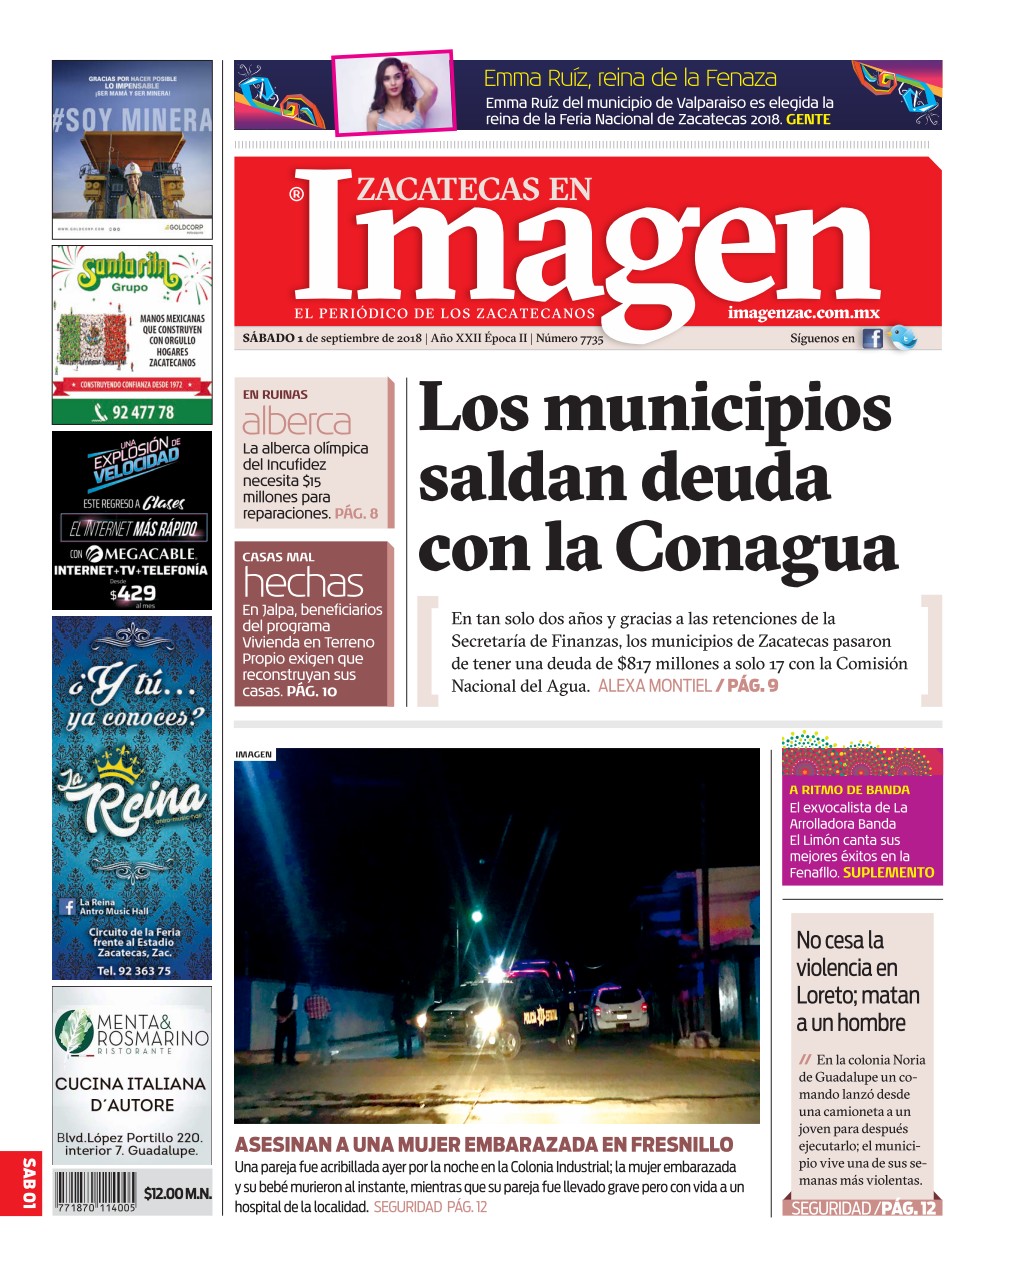 Imagen Zacatecas edición del 01 de septiembre 2018